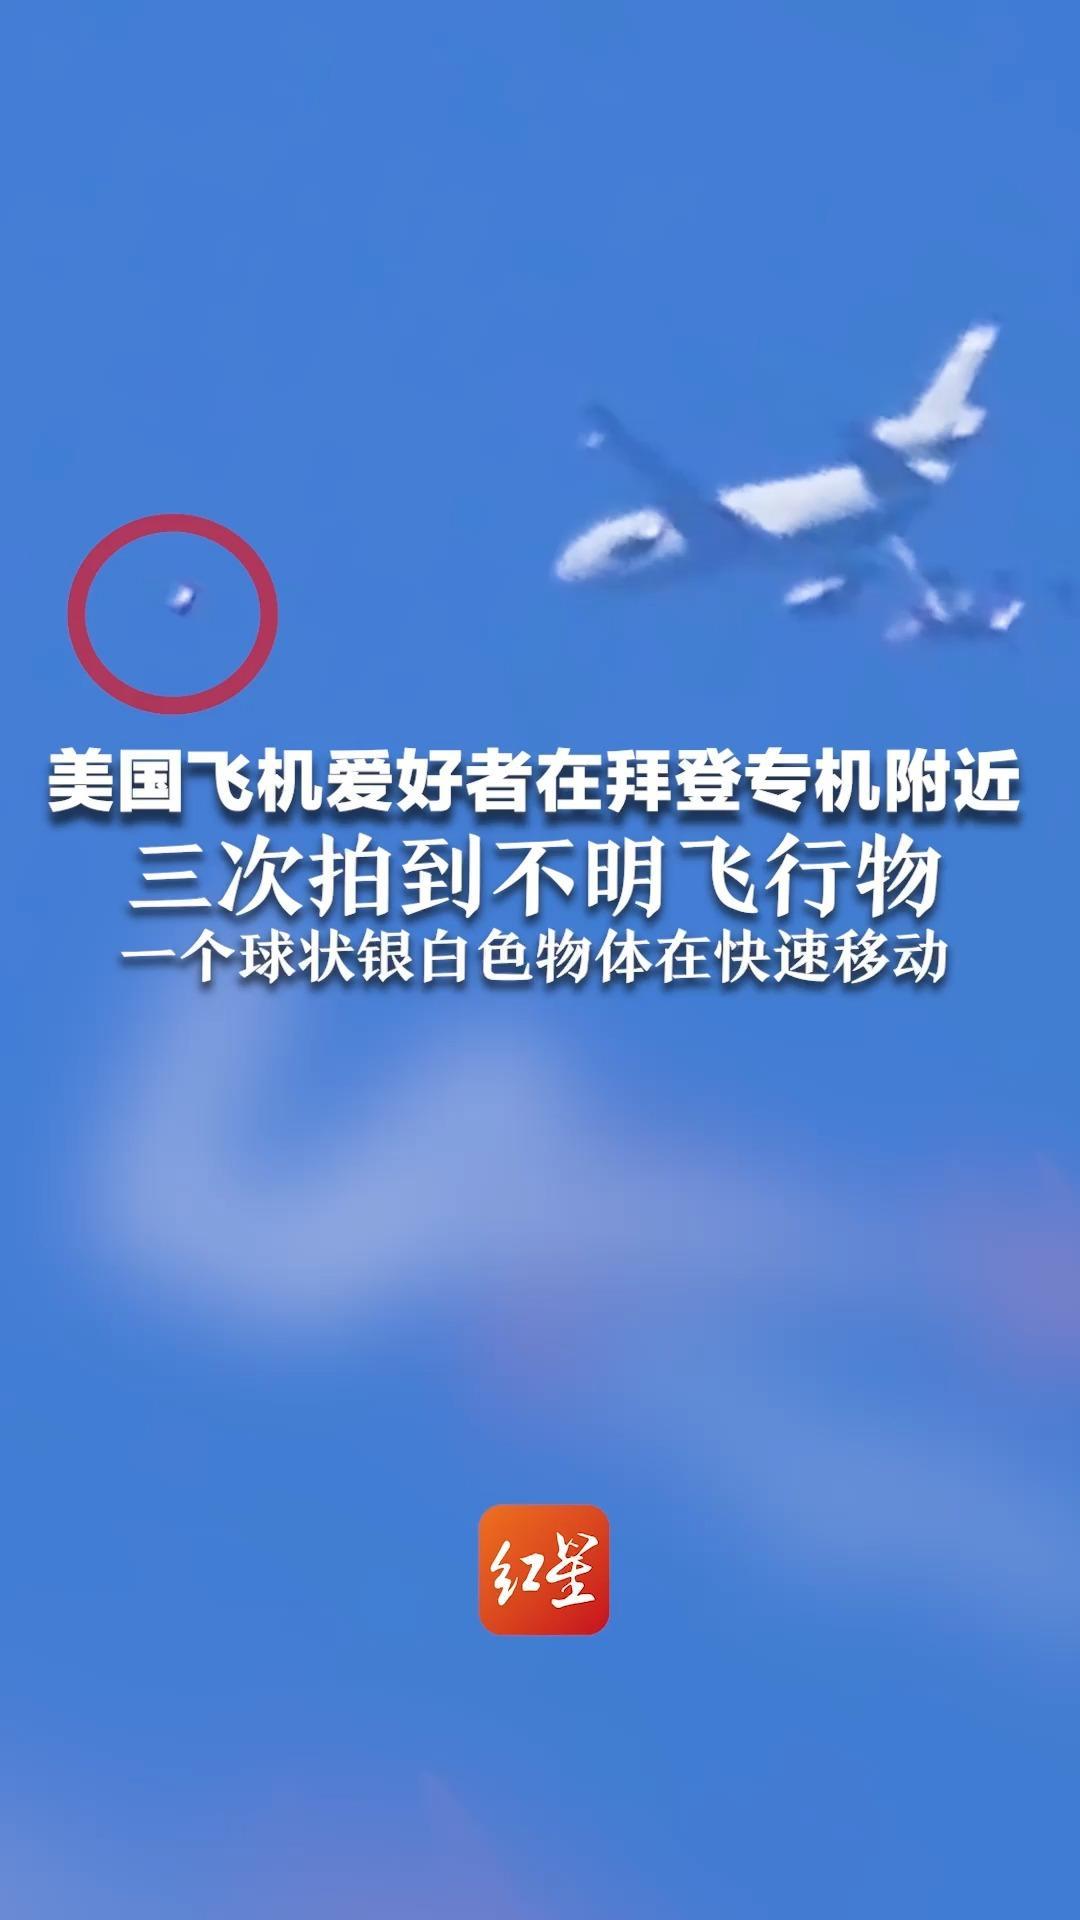 美国飞机爱好者在拜登专机附近 三次拍到不明飞行物 一个球状银白色物体在快速移动